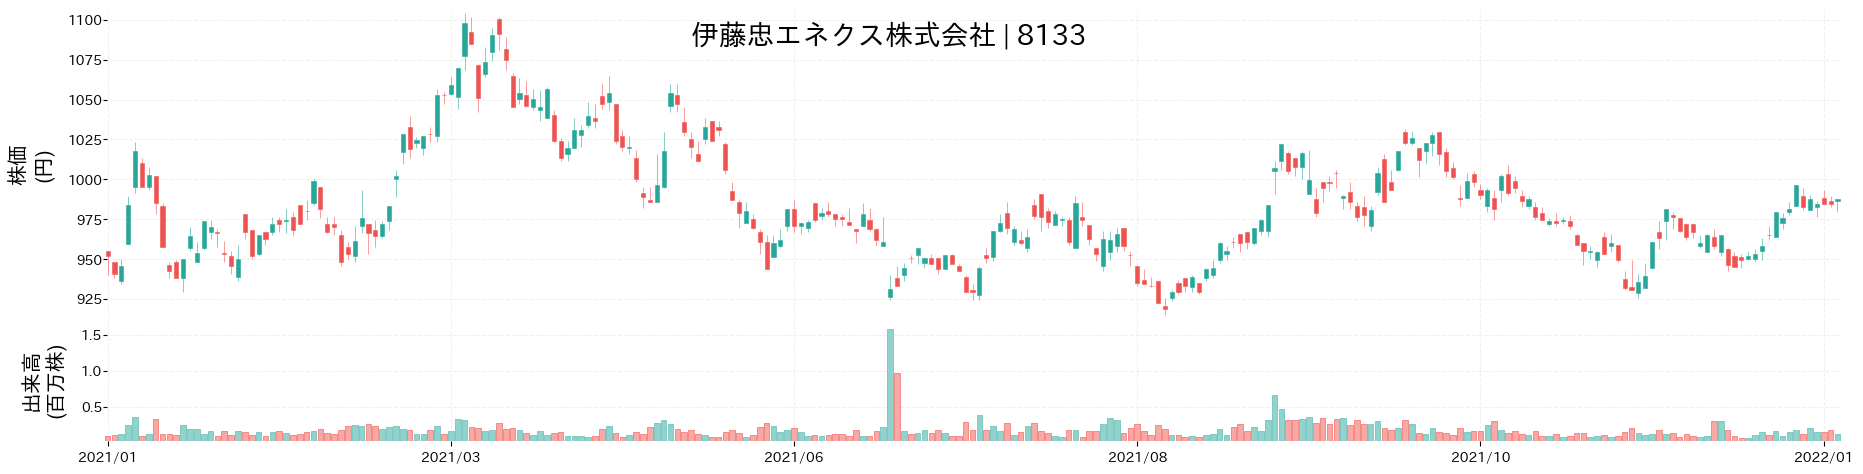 伊藤忠エネクスの株価推移(2021)